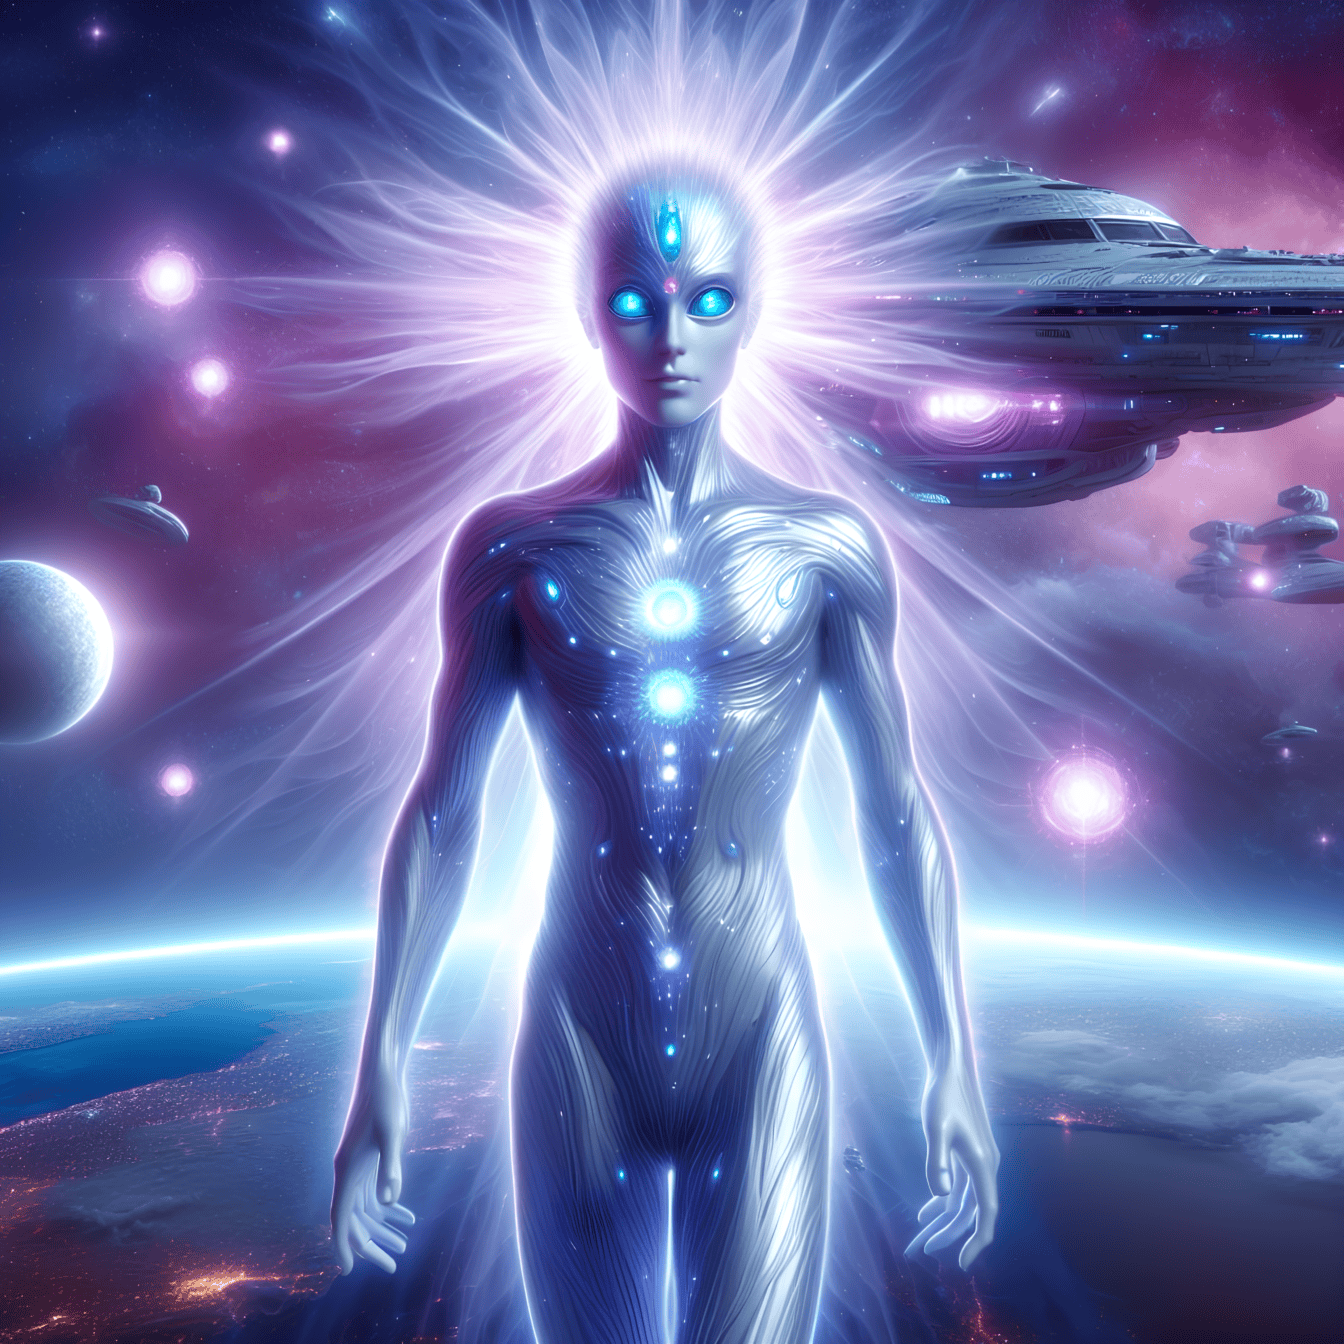 Un ser superior extraterrestre humanoide con las habilidades de hipnosis y lectura de la mente usando hipnosis cuántica